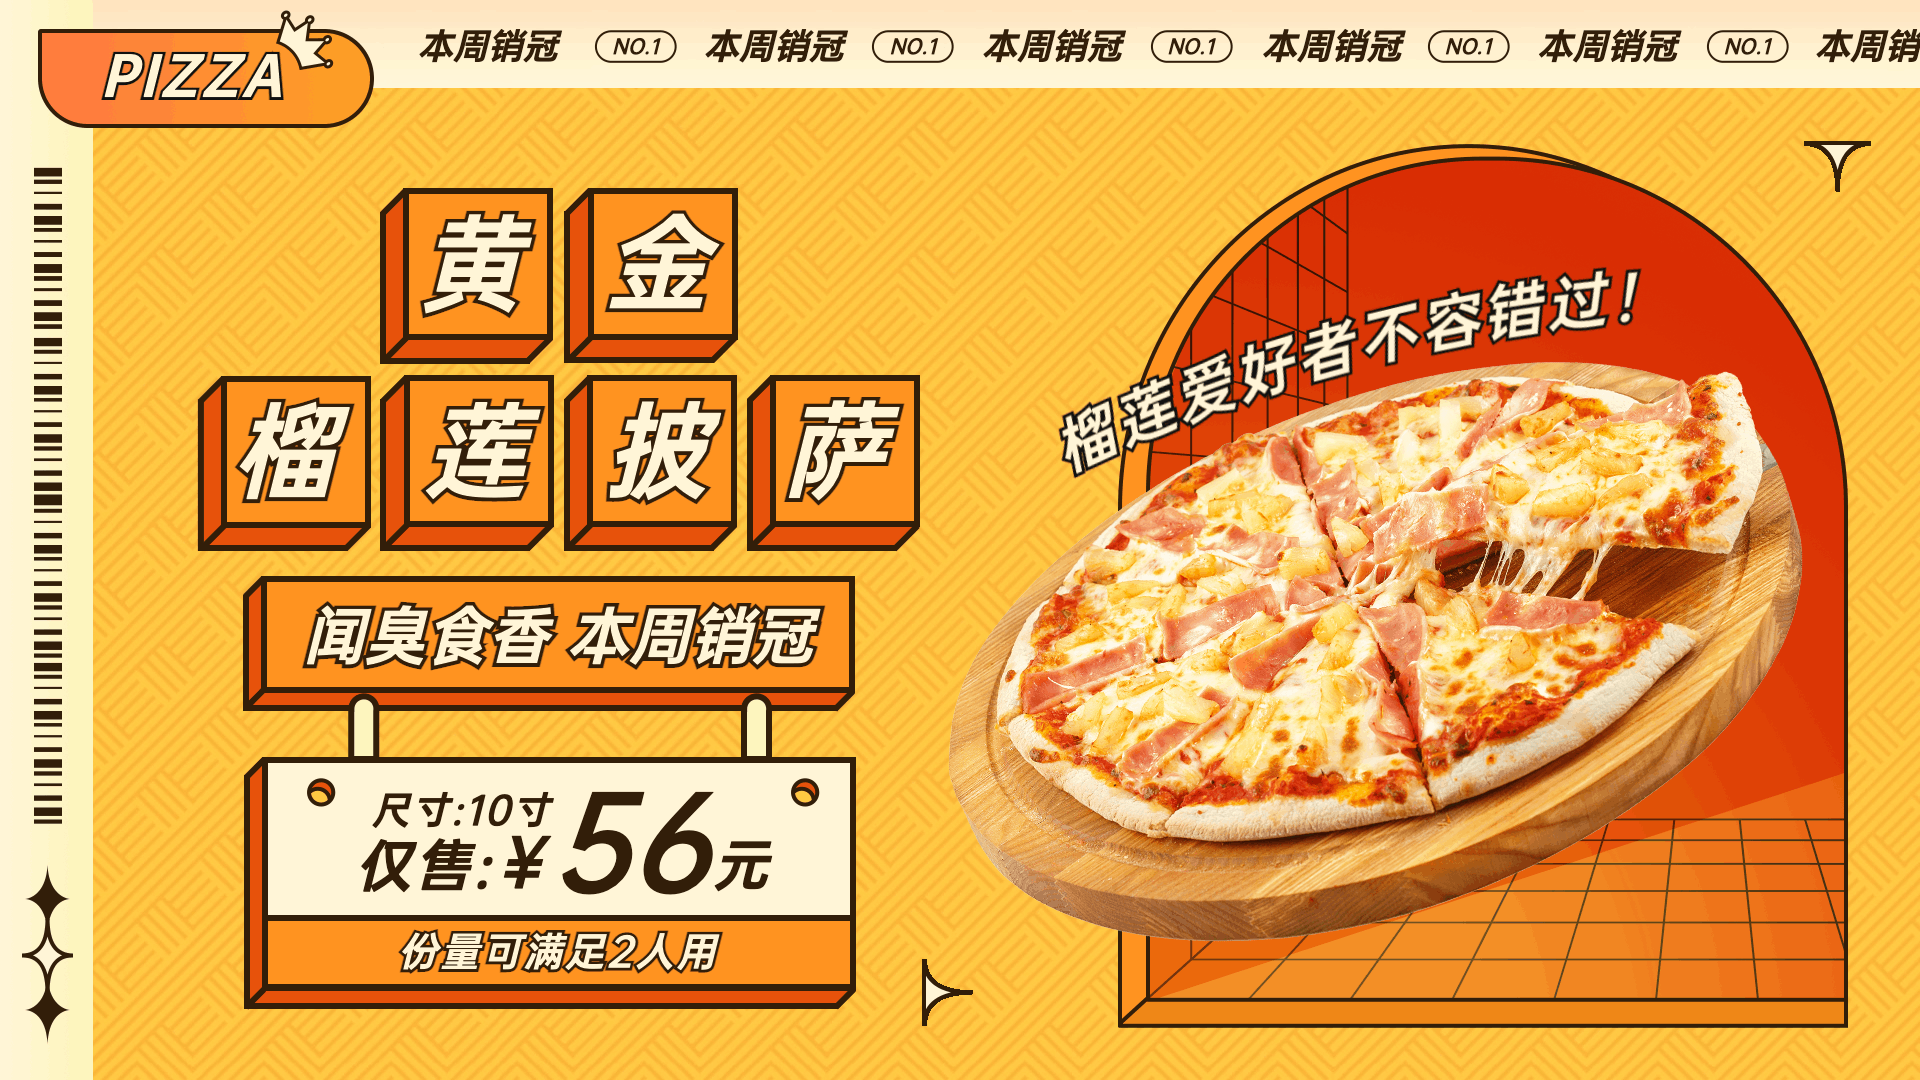 披萨意面单品促销活动创意电视屏横屏动图